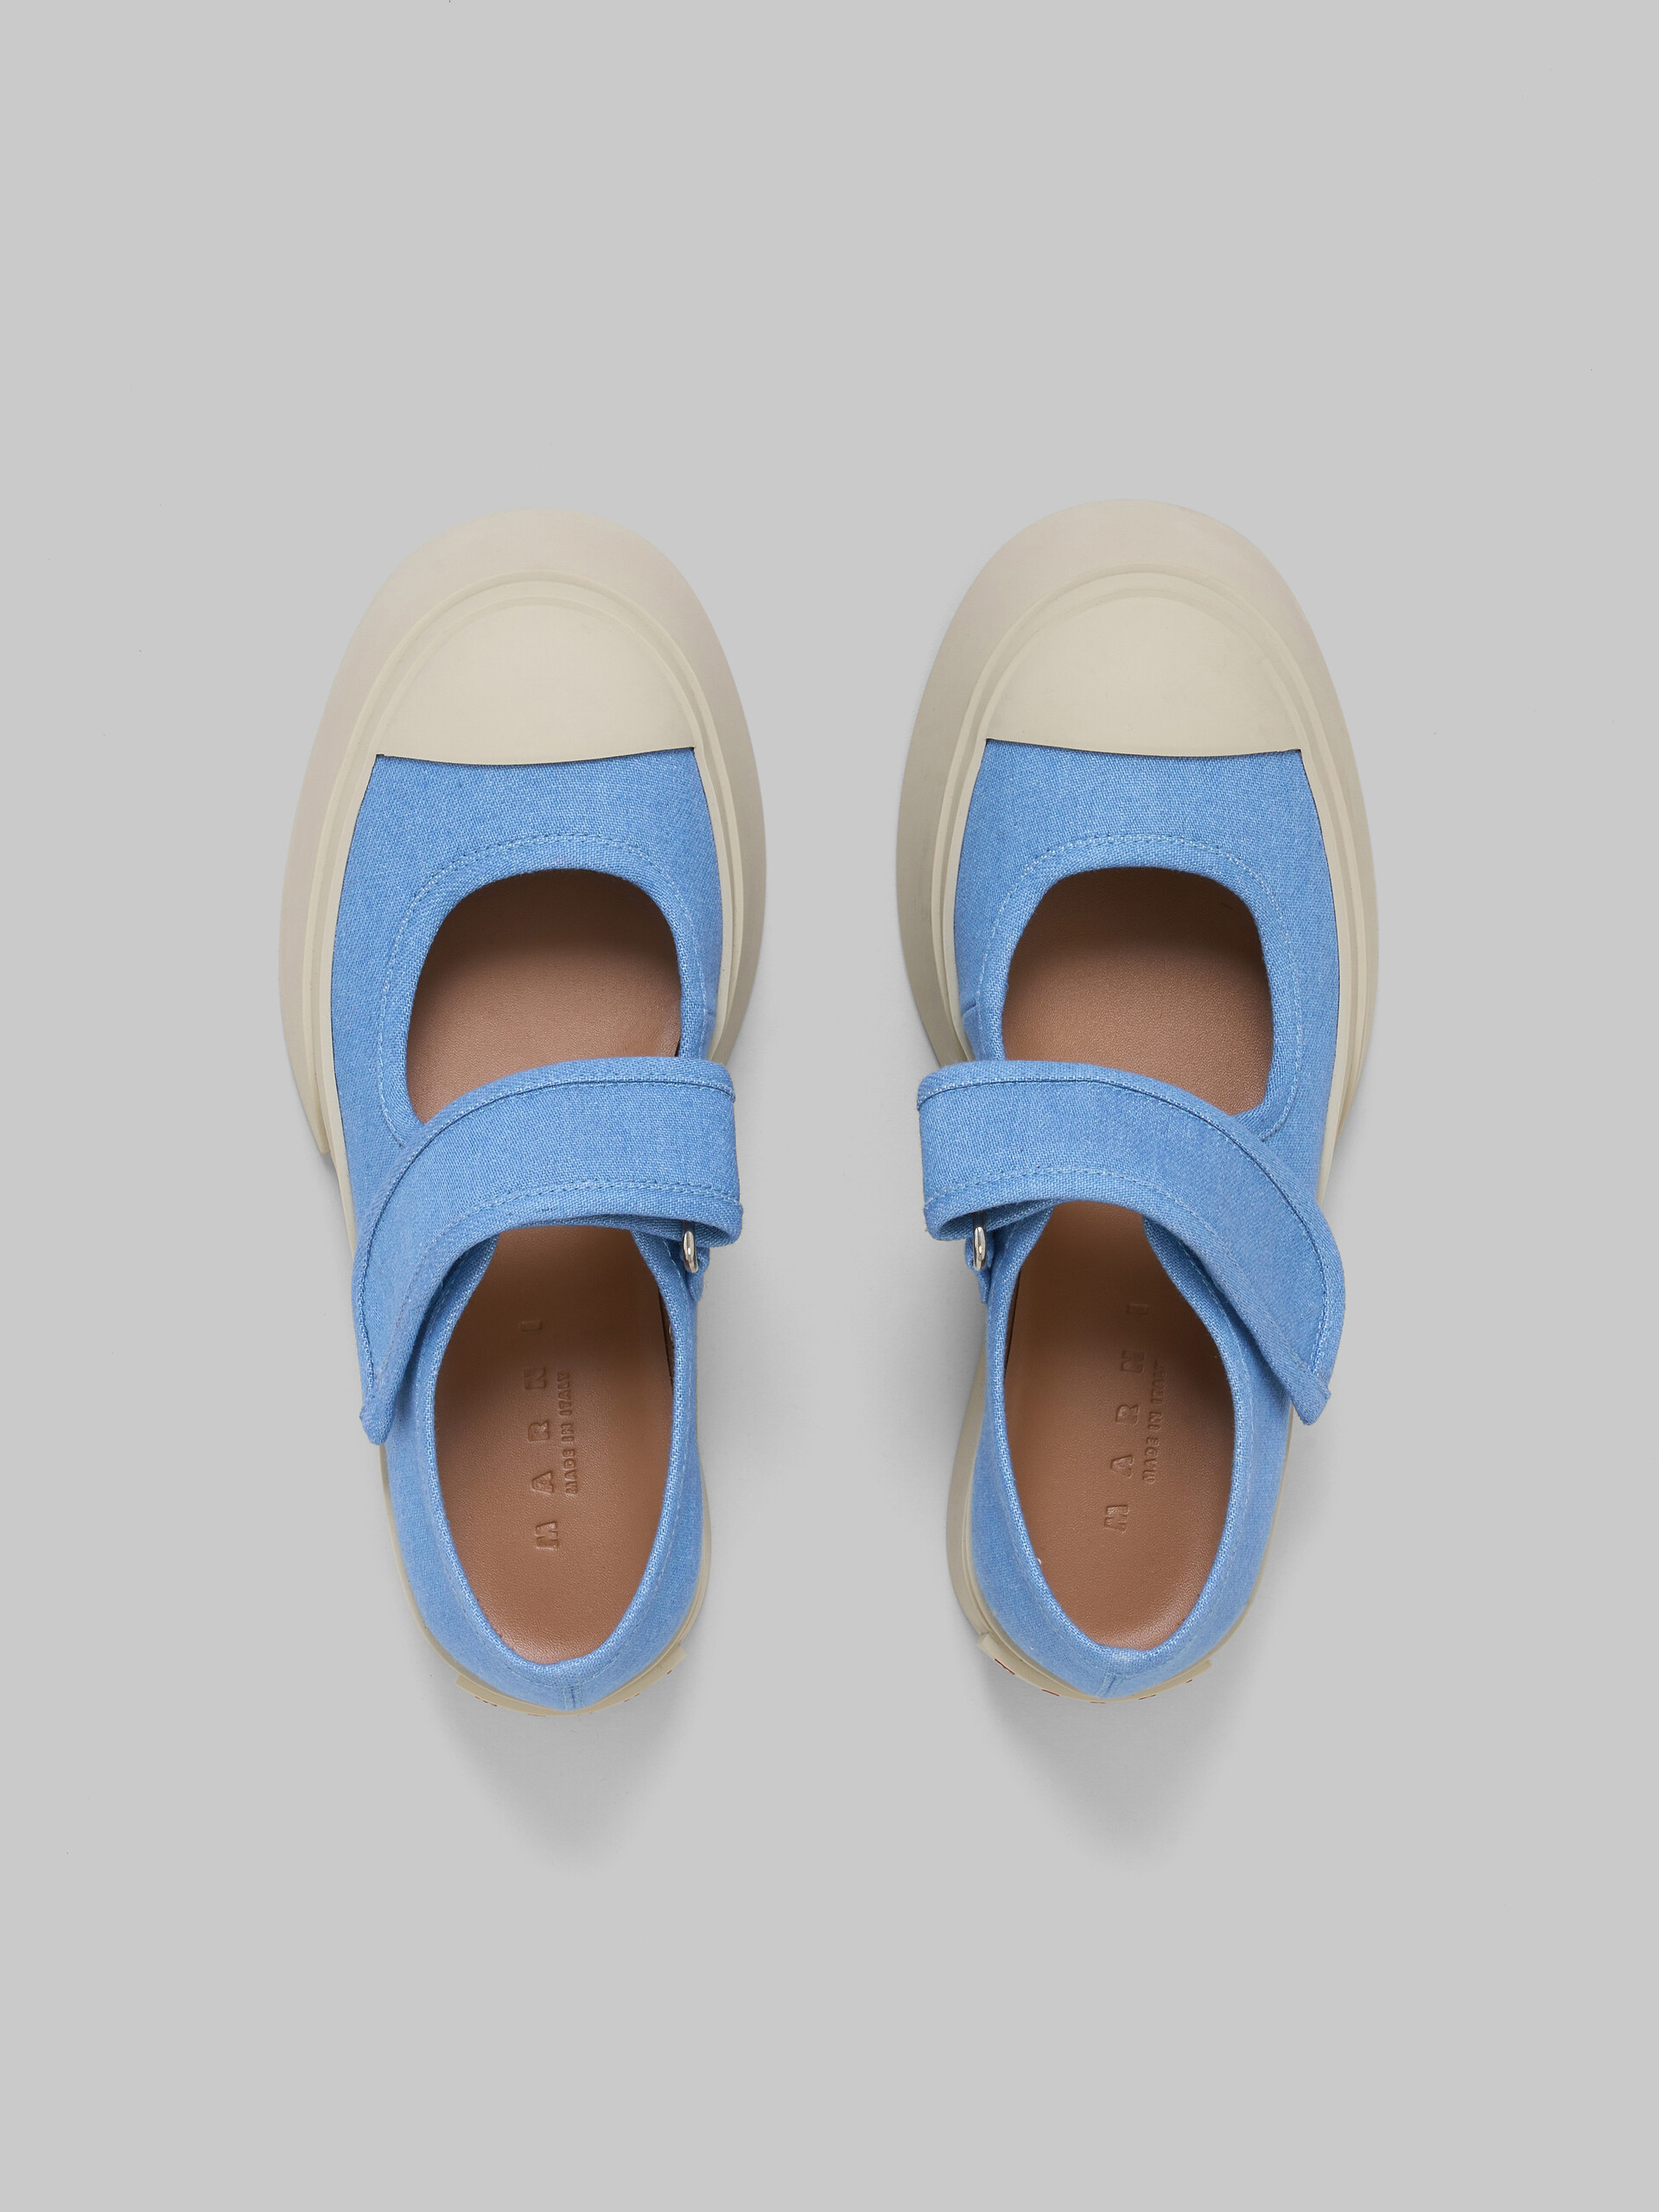 Zapatilla Mary Jane de denim azul claro - Sneakers - Image 4